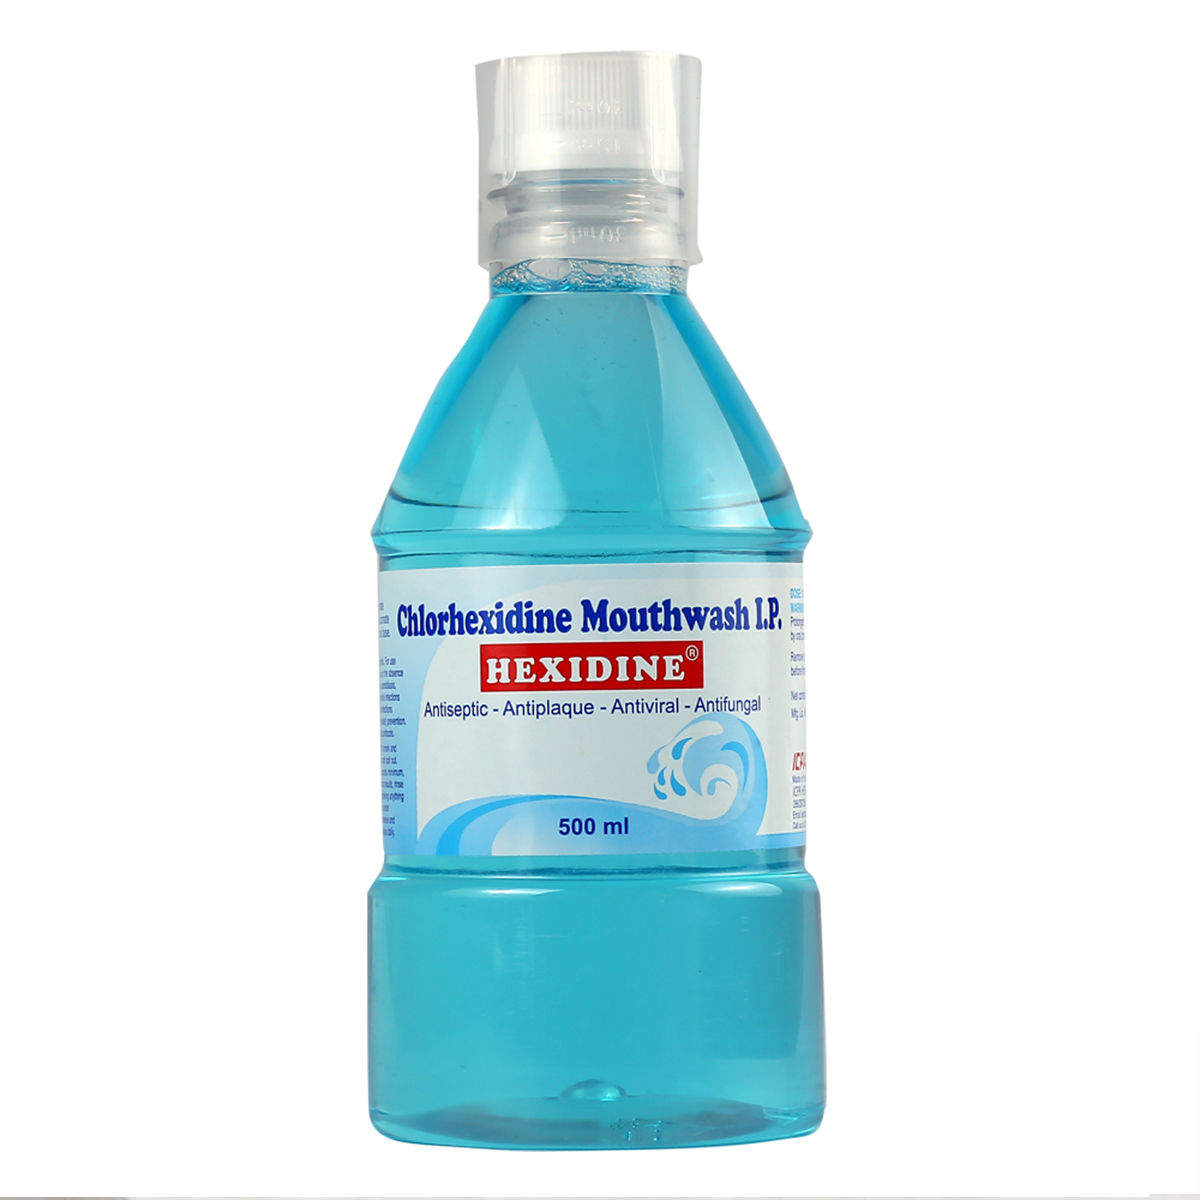 Buy Hexidine Mouth Wash 500 ml Online